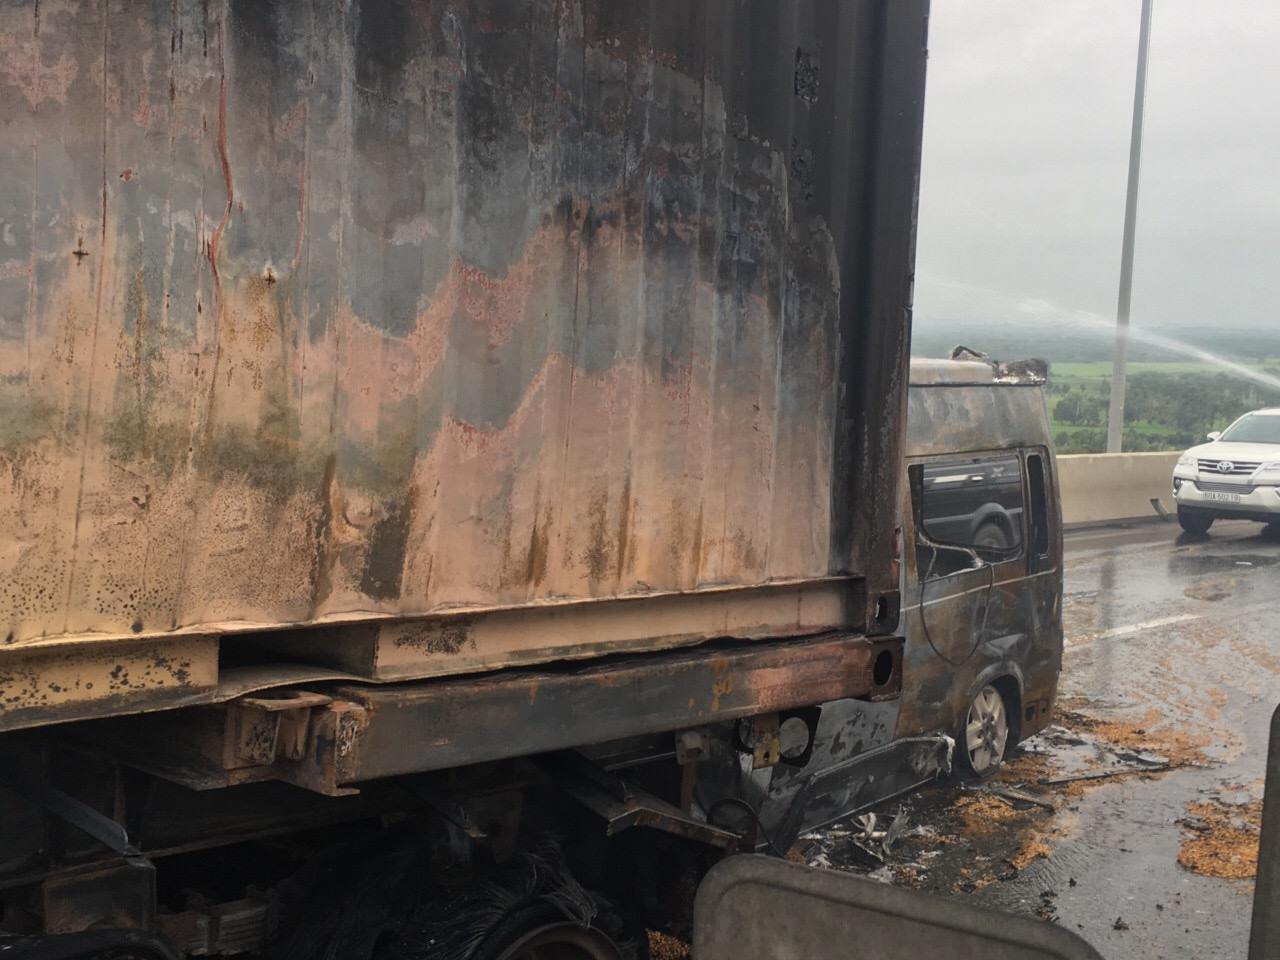 Lời kể kinh hoàng của tài xế khi thấy xe khách lao vào container khiến 2 người chết: Đầu ô tô nát bươm rồi bốc cháy ngùn ngụt - Ảnh 1.